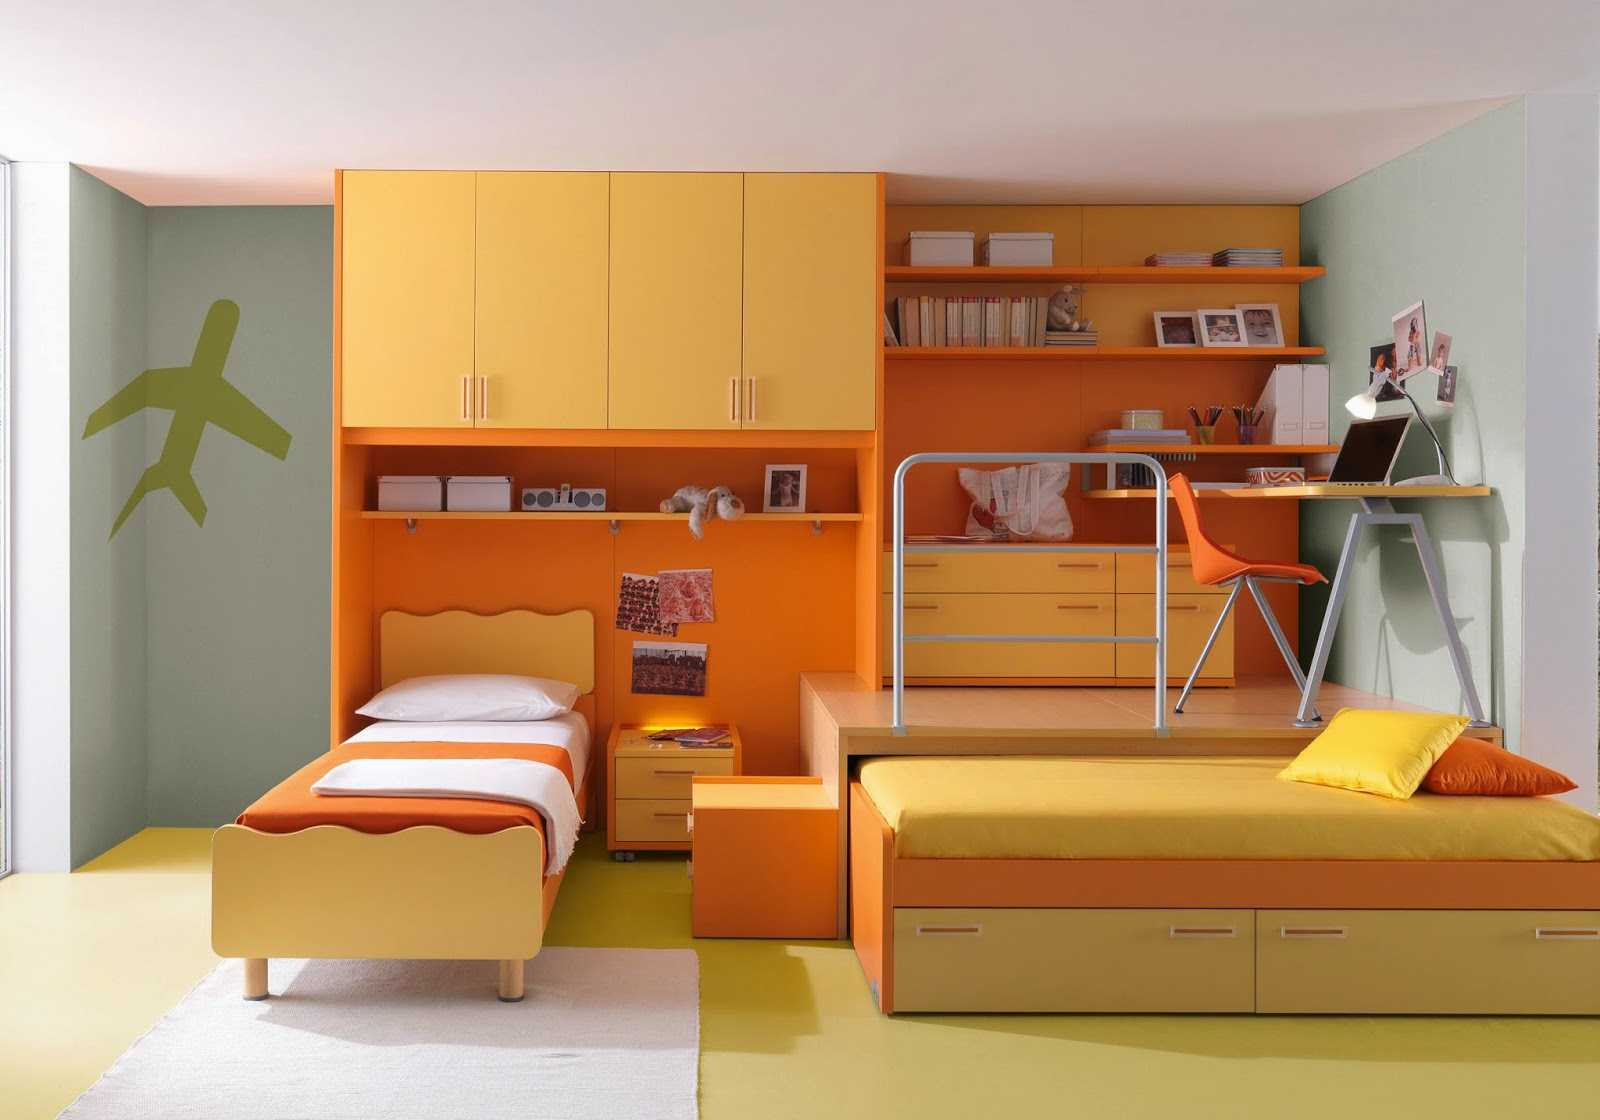 kombinacija svijetle narančaste boje u unutrašnjosti kuće s drugim bojama